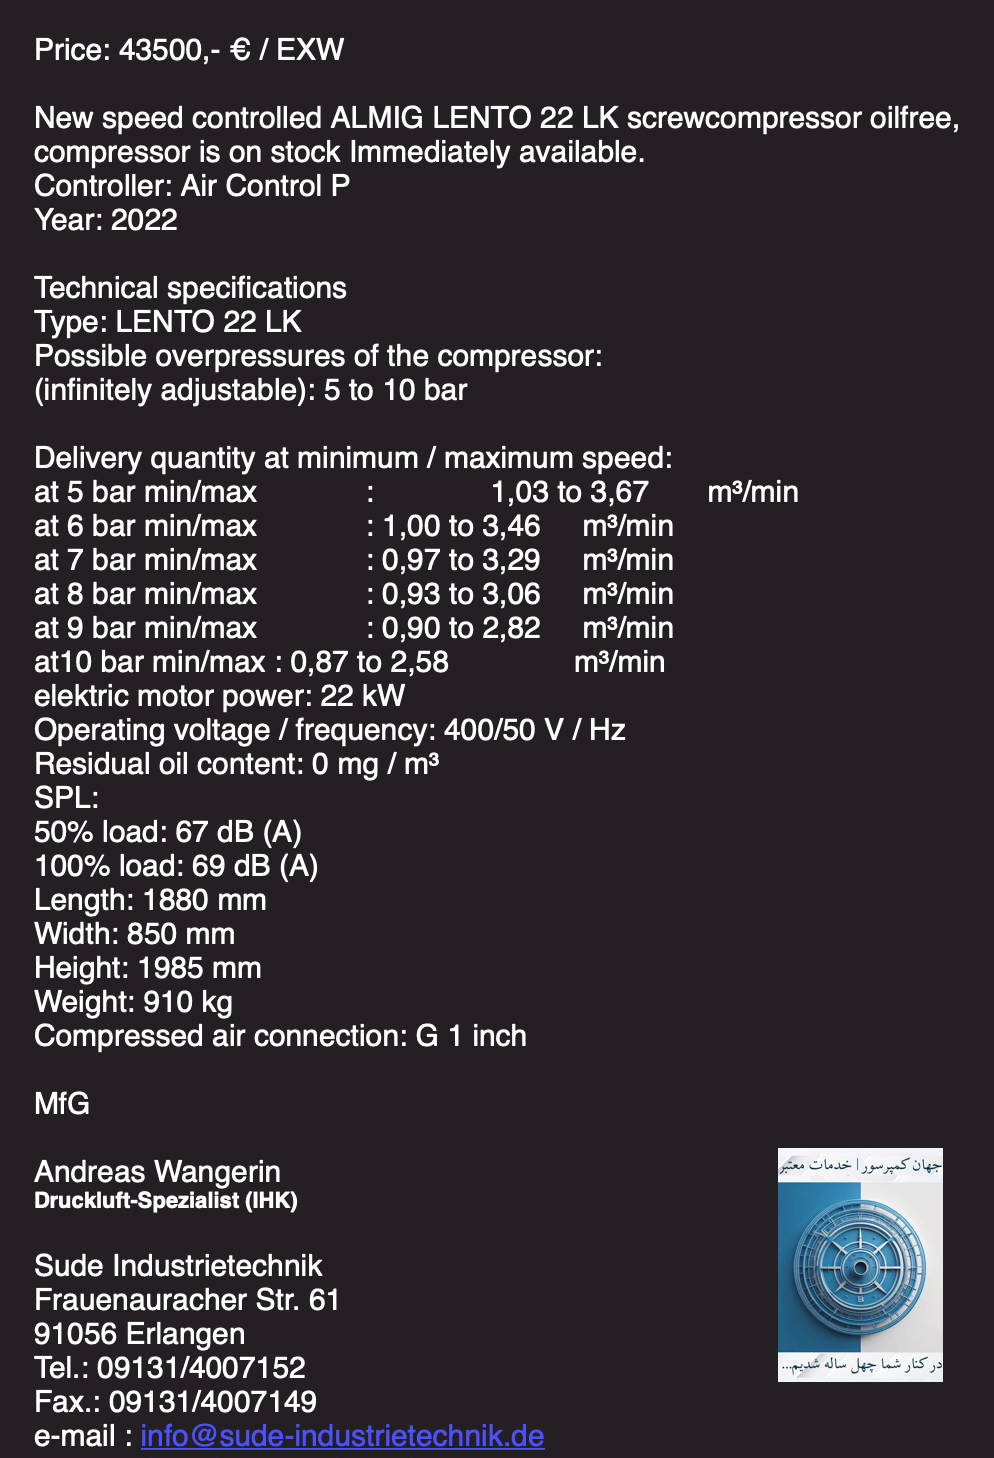 پیشنهاد قیمتی و مشخصات فنی کمپرسور اسکرو برقی آلمیگ ۲۲ کیلووات